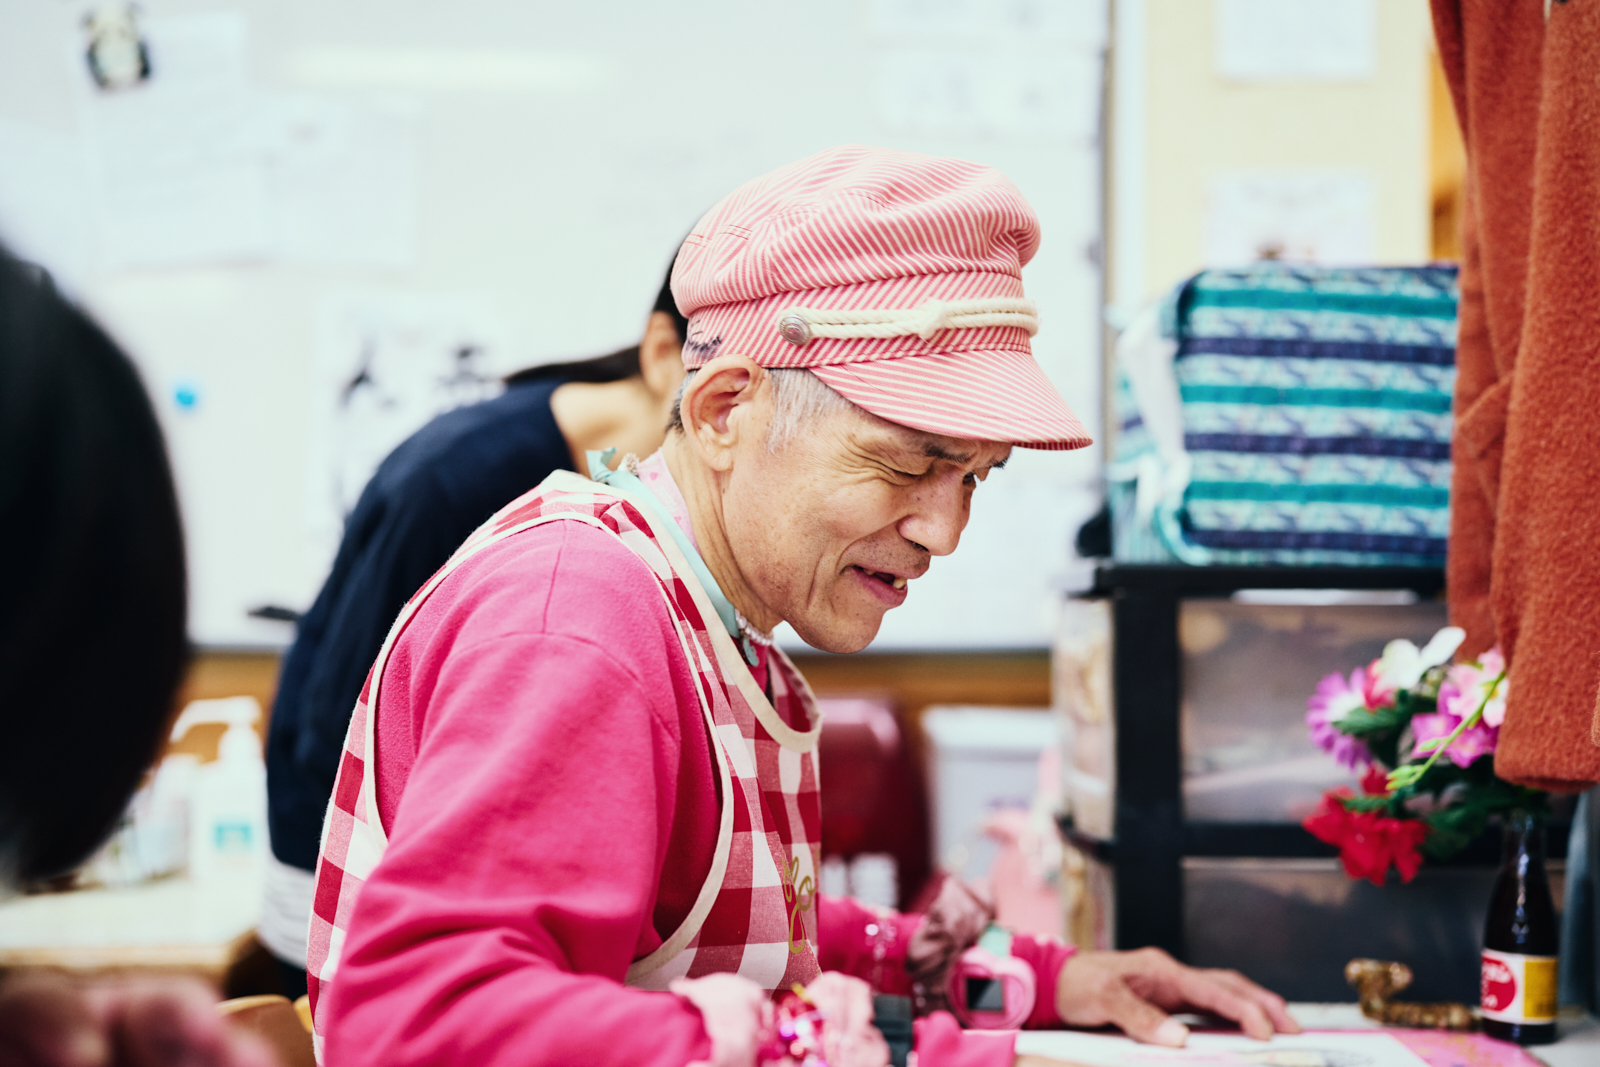 【写真】社会福祉法人 さくらんぼ共生会〈さくらんぼ共生園〉に所属するアーティストの荒木恵二さんが、自身が絵を描く作業机の上に視線を落とし、微笑んでいる横顔